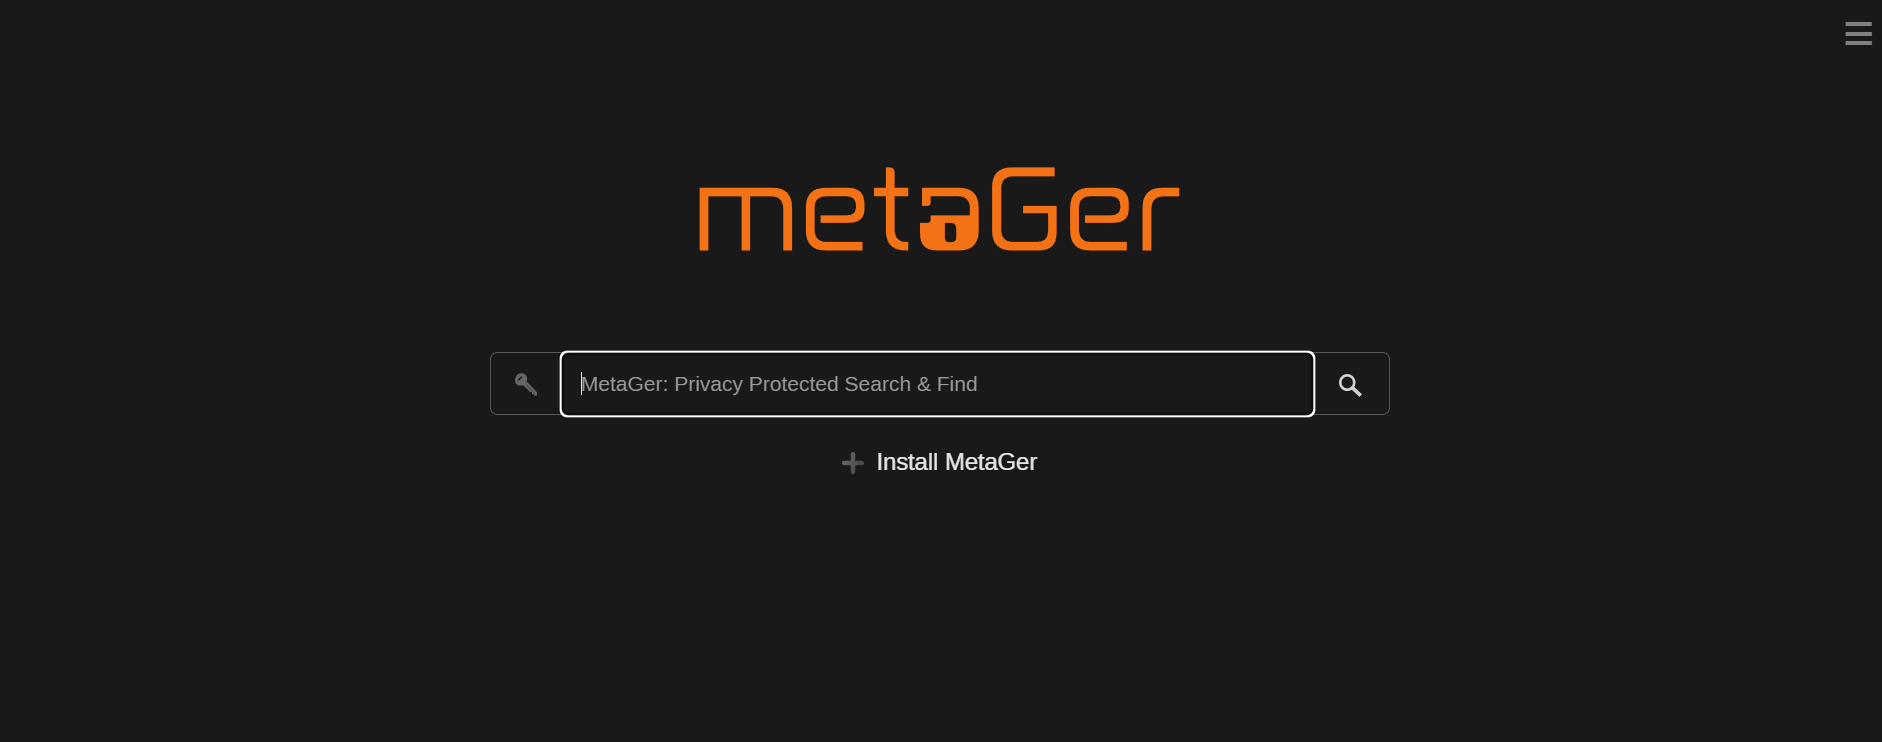 Buscadores aparte de Google: MetaGer